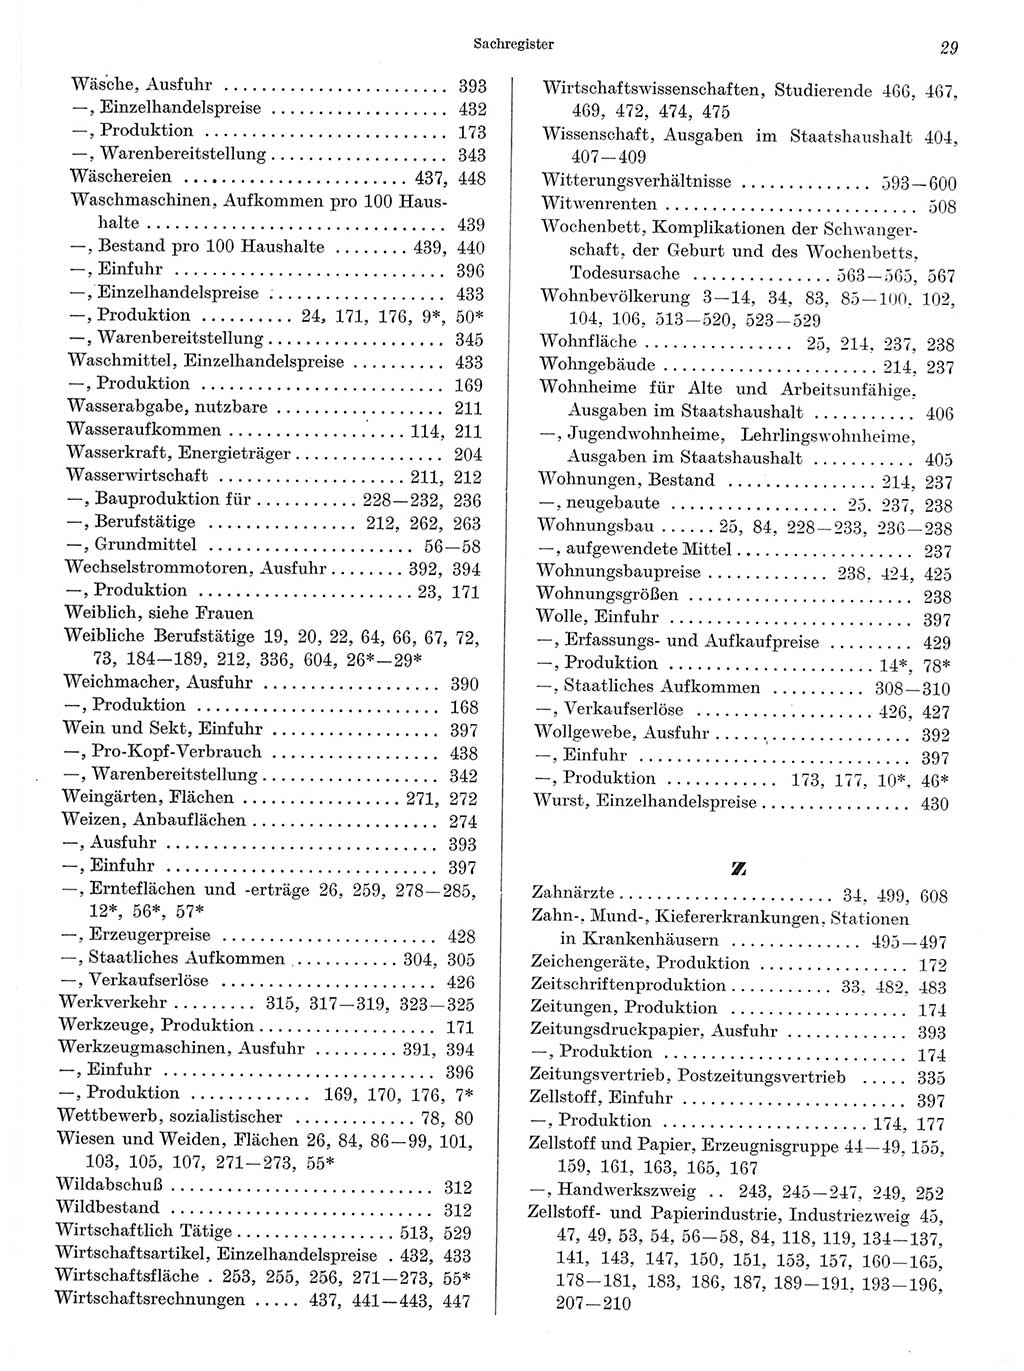 Statistisches Jahrbuch der Deutschen Demokratischen Republik (DDR) 1968, Seite 29 (Stat. Jb. DDR 1968, S. 29)